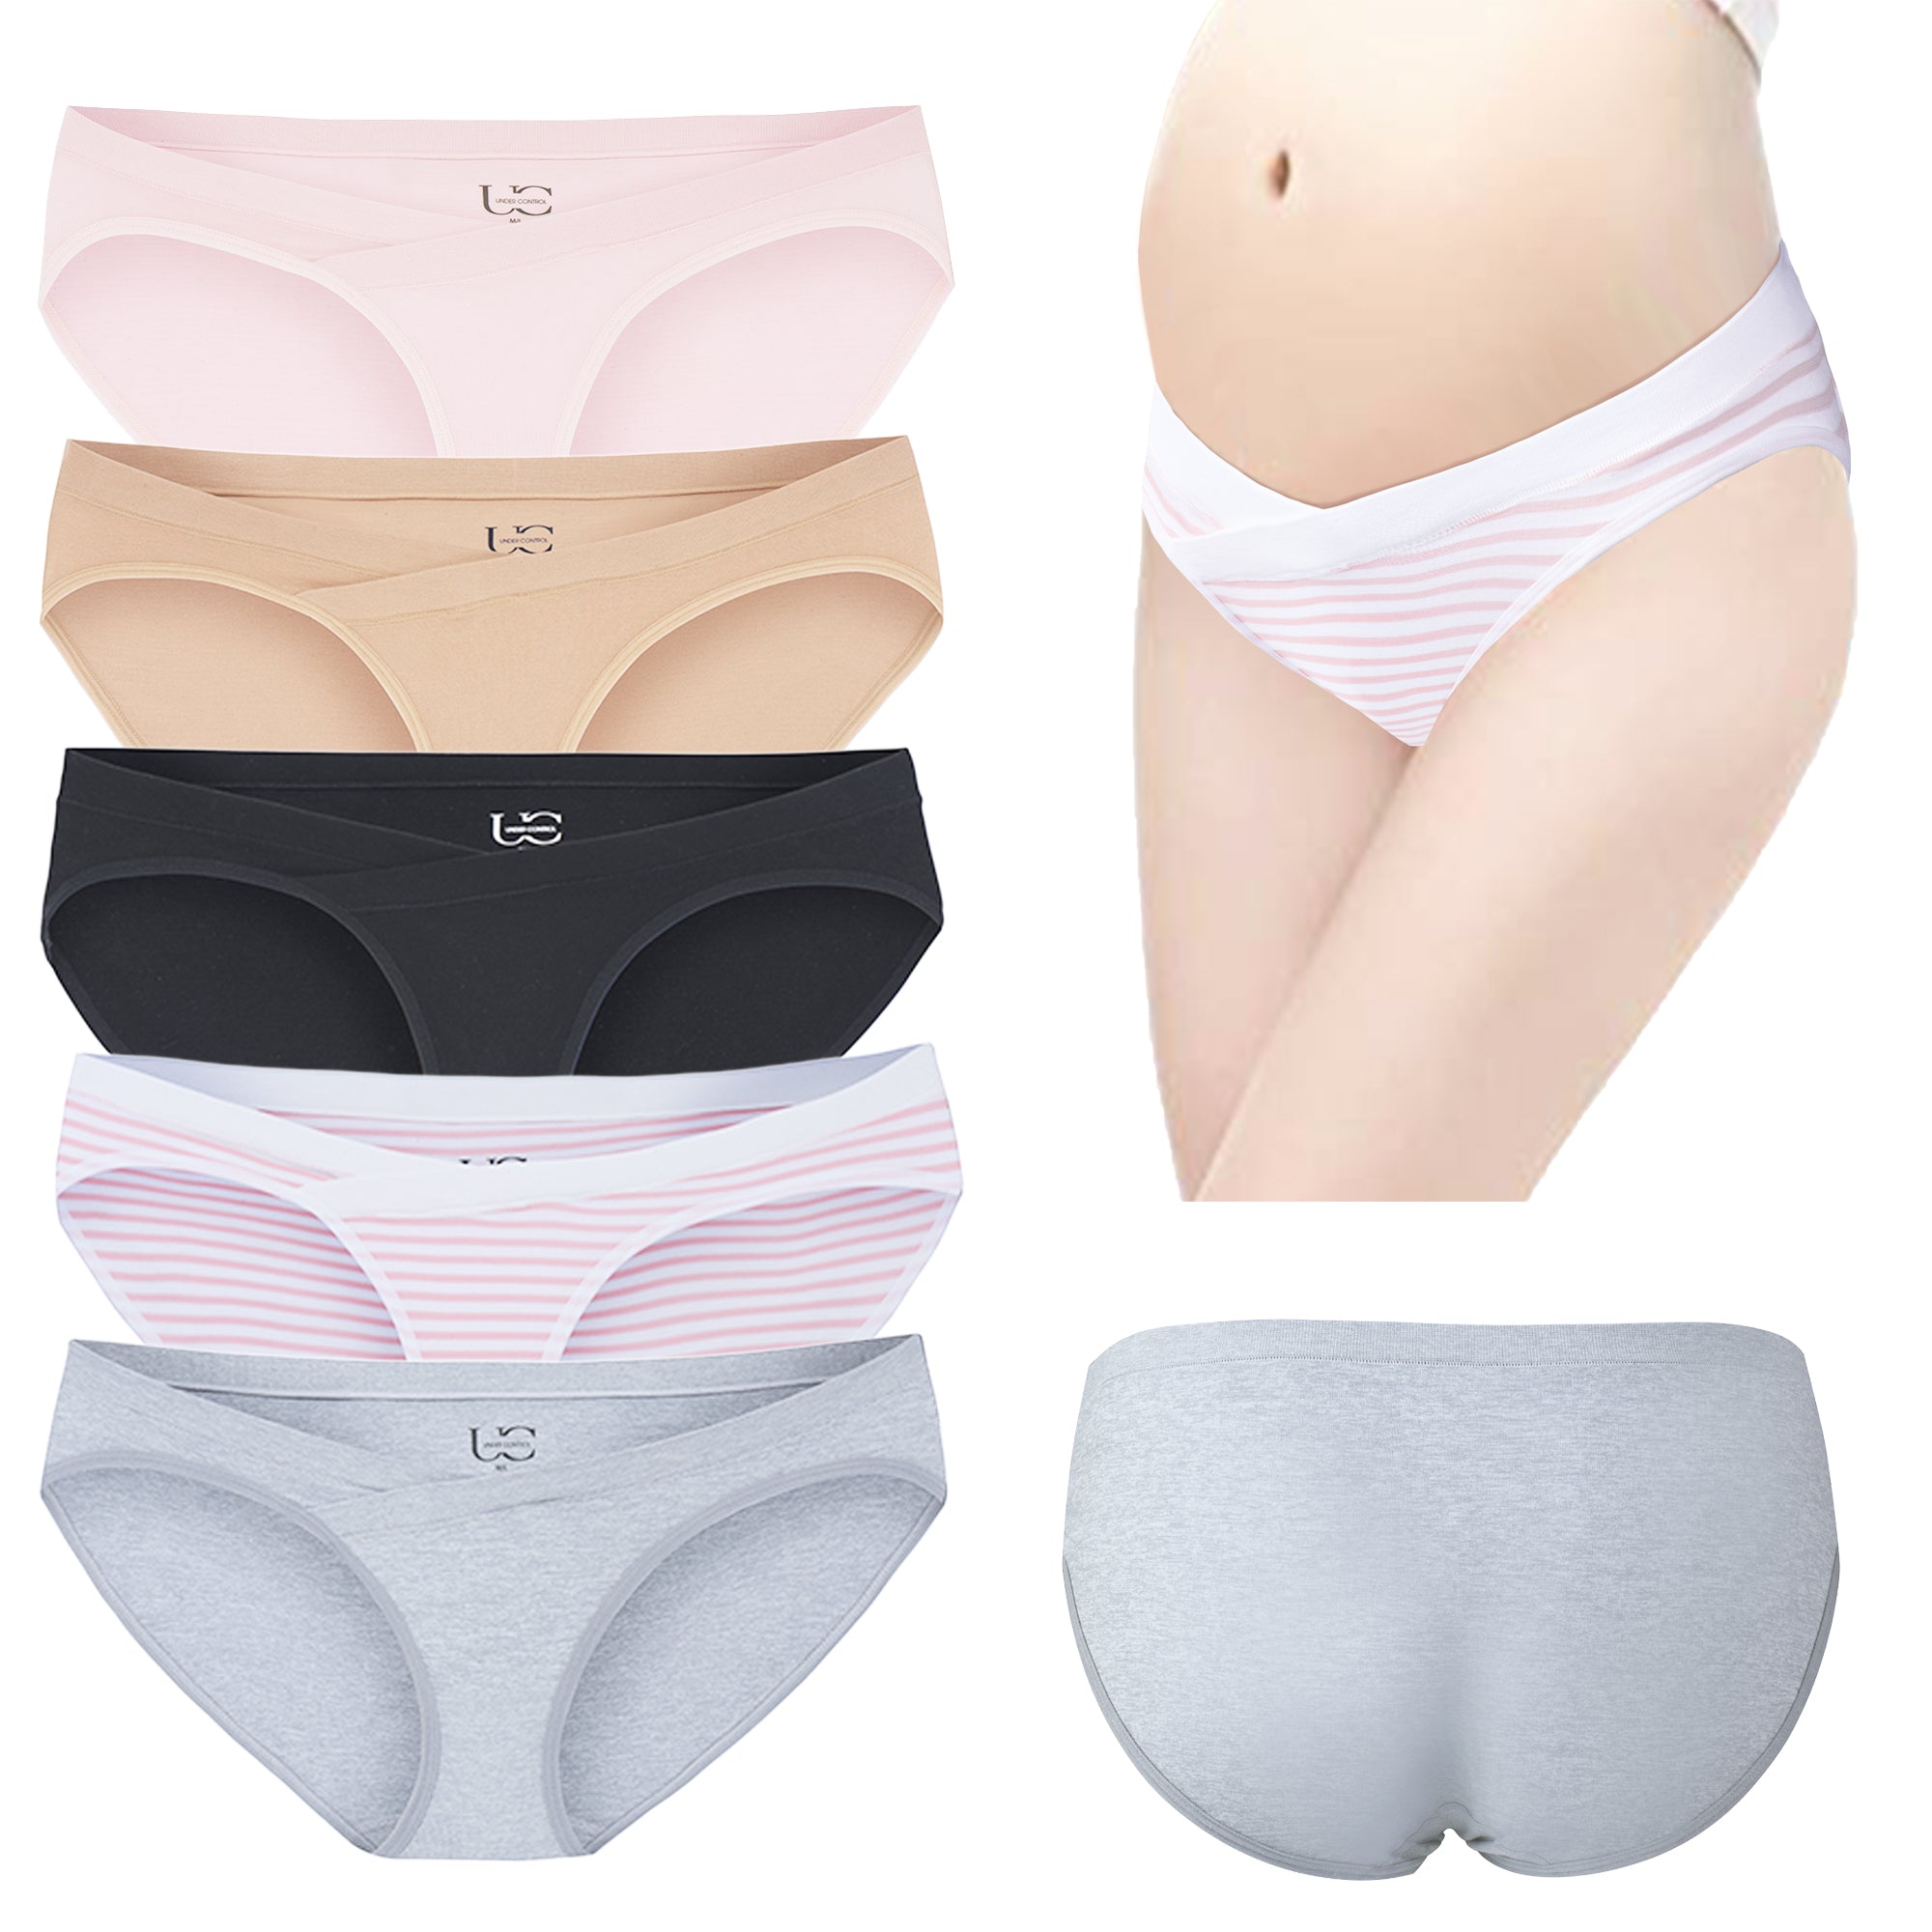 HUPOM Pregnancy Underwear For Women Underwear Thong Casual Tie